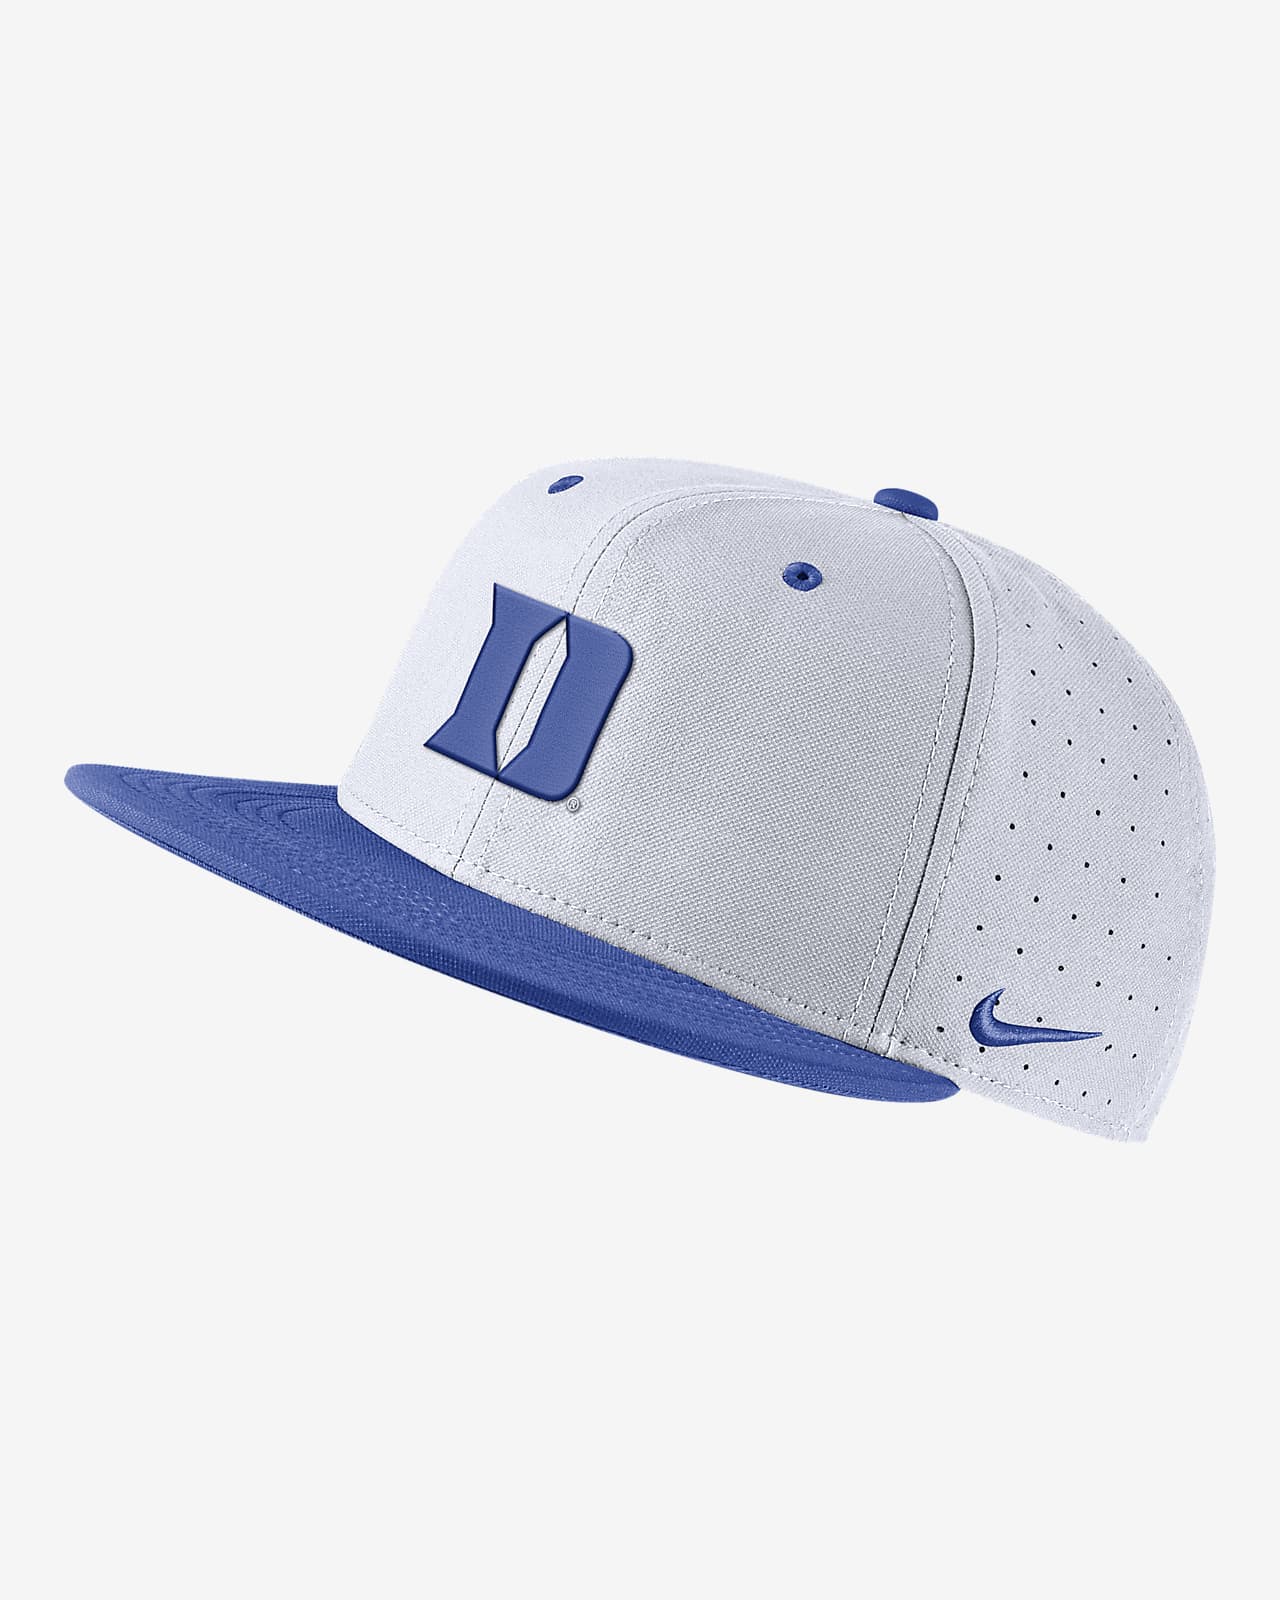 Duke Nike College Baseball Hat.